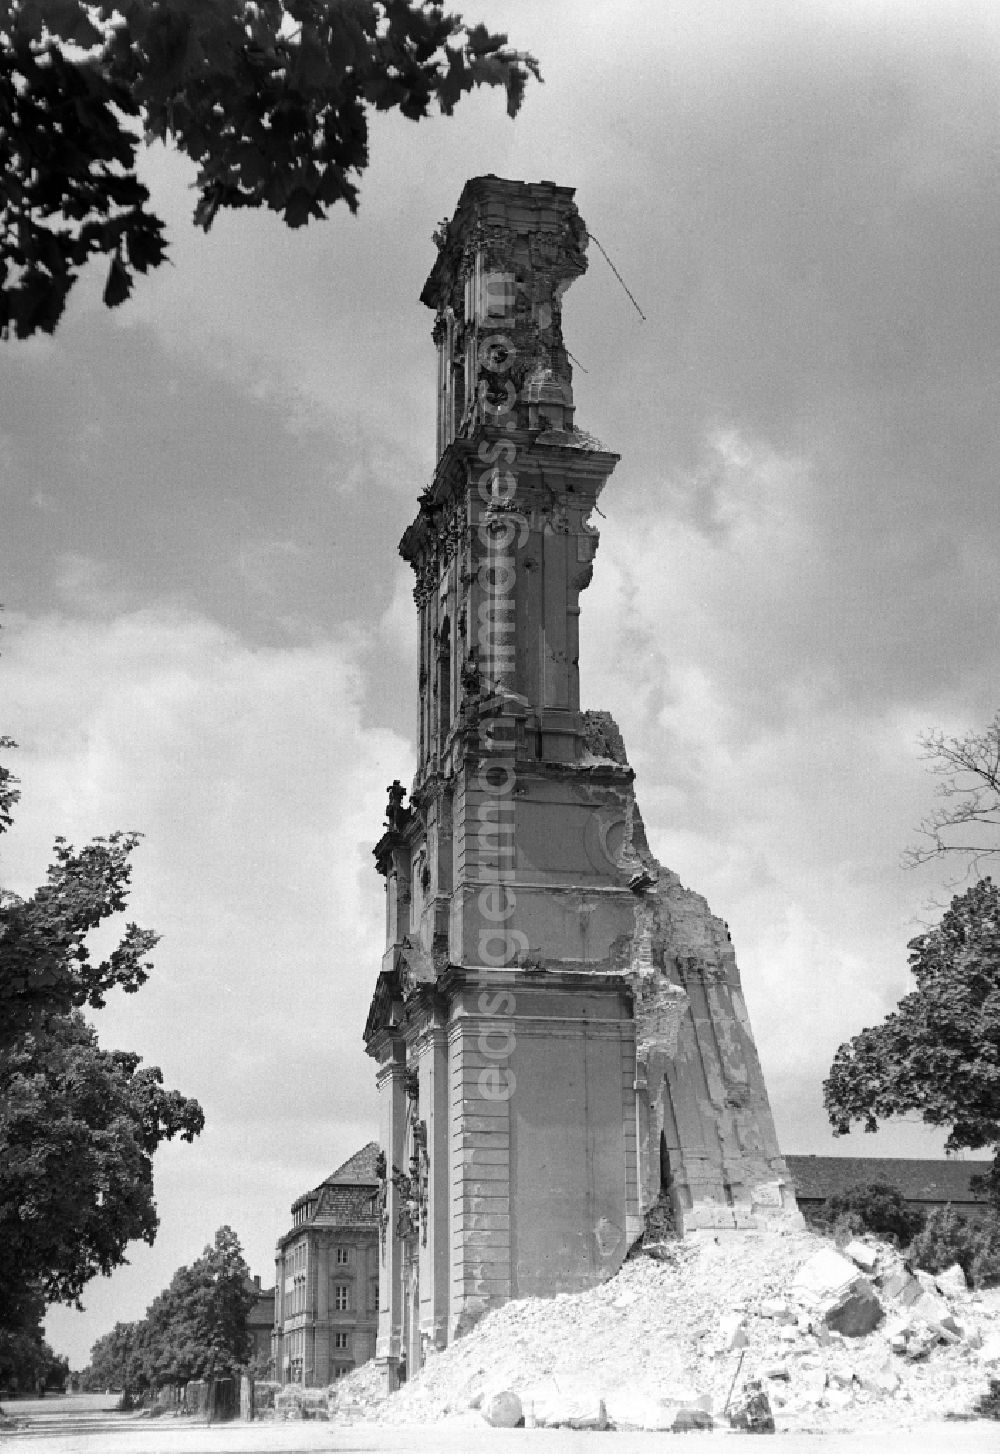 Potsdam: Abriss der Garnisonkirche. Blick von der Breite Straße auf die Reste vom Glockenturm. Die Garnisonkirche Potsdam wurde von Philipp Gerlach zwischen 1730 und 1735 auf Befehl Friedrich Wilhelm I. errichtet. Sie galt als ein Hauptwerk des preußischen Barock. Mit einem 88,40 Meter hohen Glockenturm überragte sie die anderen Bauten der Stadt. In der offenen Turmlaterne befand sich ein holländisches Glockenspiel mit 4